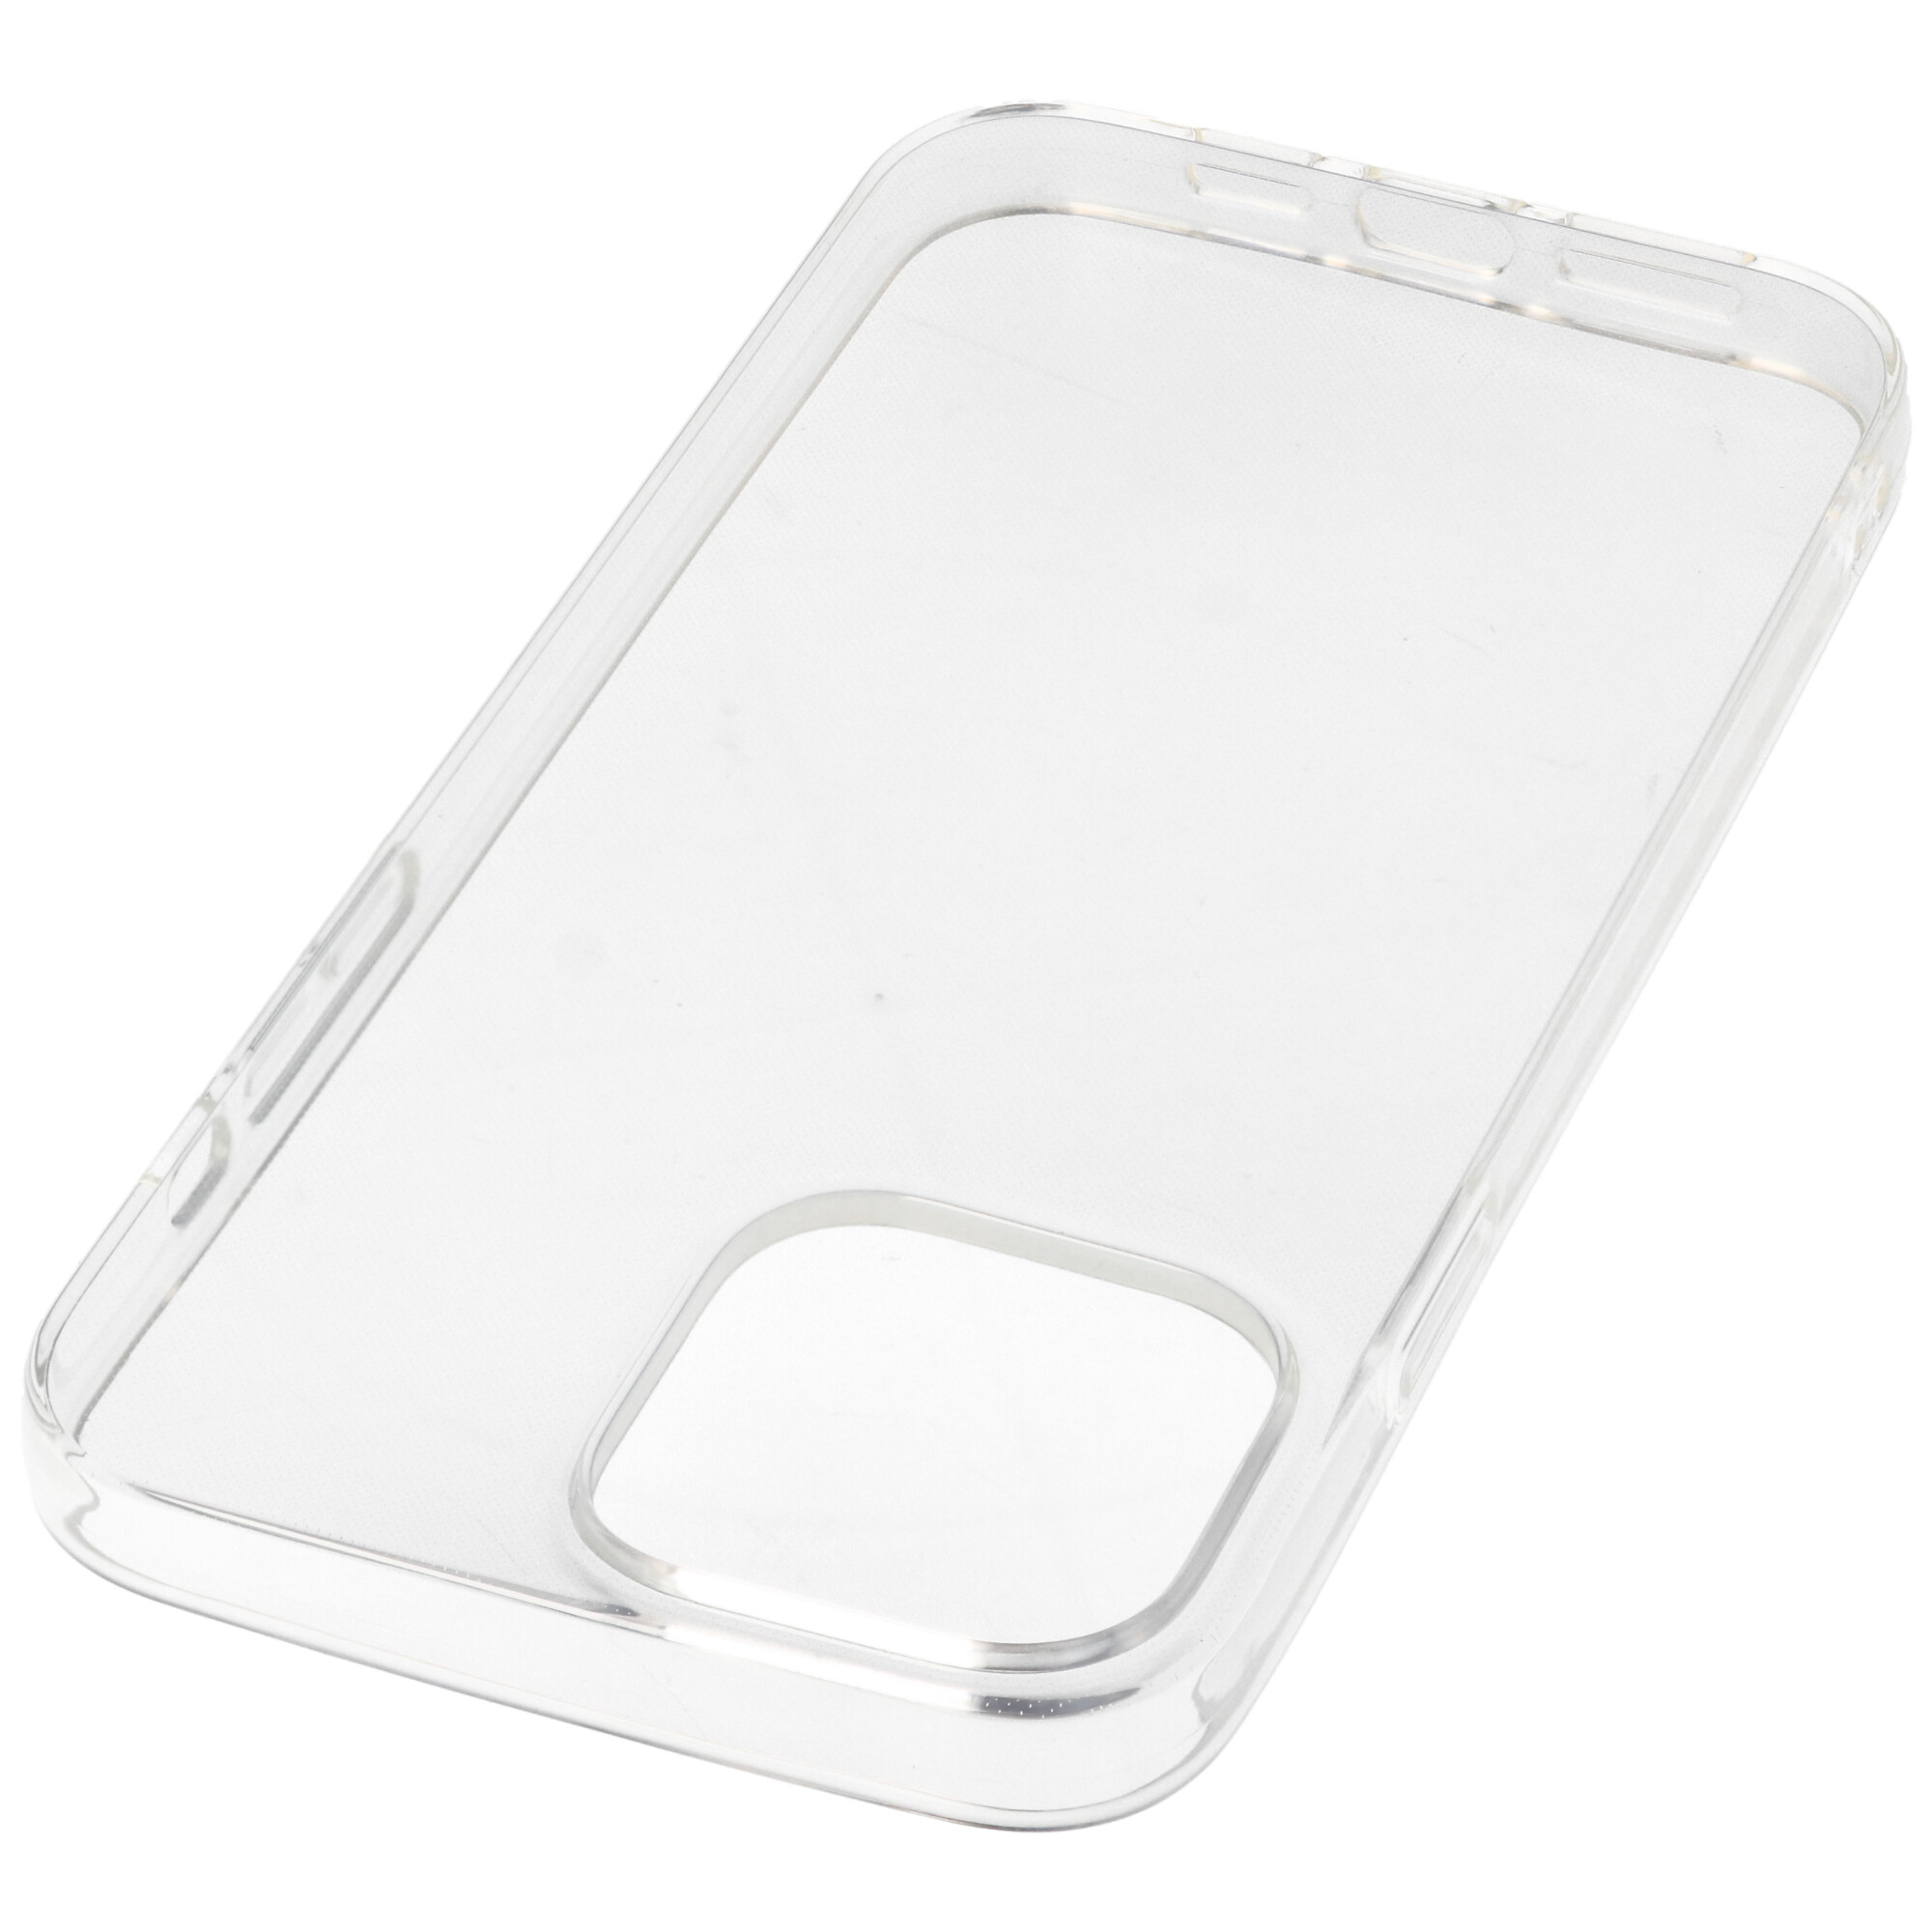 Hülle passend für Apple iPhone 13 Pro Max - transparente Schutzhülle, Anti-Gelb Luftkissen Fallschutz Silikon Handyhülle robustes TPU Case